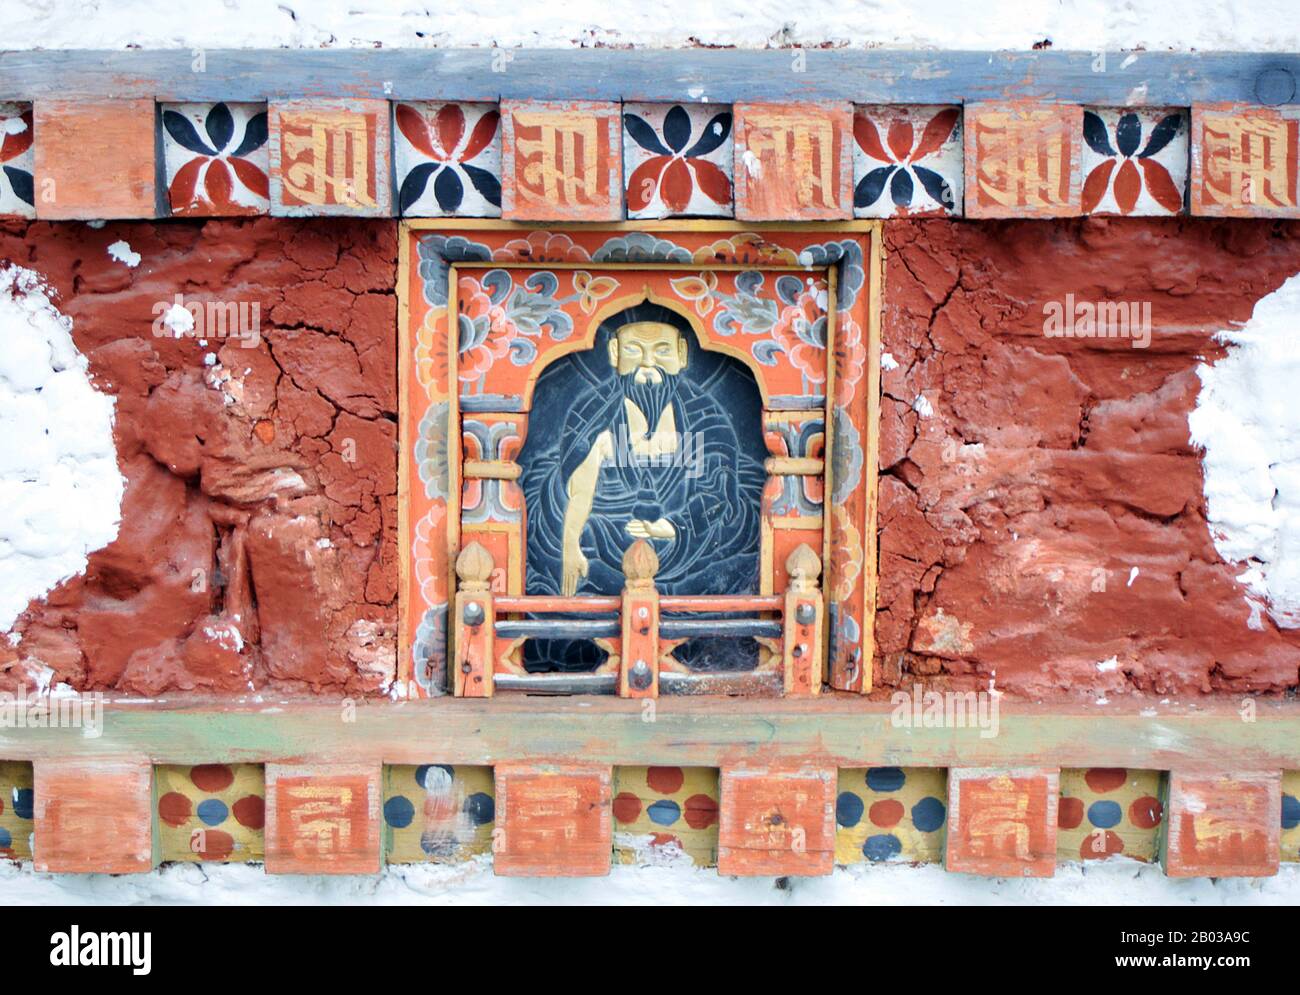 Der Dochula-Pass ist ein bhutanischer Gebirgspass, der an der Straße von Thimphu nach Punakha liegt. Innerhalb des Passes befinden sich 108 Gedenkstätten "Chortens" oder Stupas, bekannt als "druk Wangyal Chortens", die von der ältesten Königinmutter Ashi Dorji Wangmo zu Ehren bhutanischer Soldaten erbaut wurden, die im Kampf gegen assamesische Aufständische aus Indien im Dezember 2003 getötet wurden. Im Pass befindet sich auch ein Kloster, der Druk Wangyal Lhakhang (Tempel), der zu Ehren von Jigme Singye Wanghuck erbaut wurde, der vierte Druk Gyalpo (Staatsoberhaupt), sowie der Royal Botanical Park, der erste, der in Bhutan eingerichtet wurde. Stockfoto